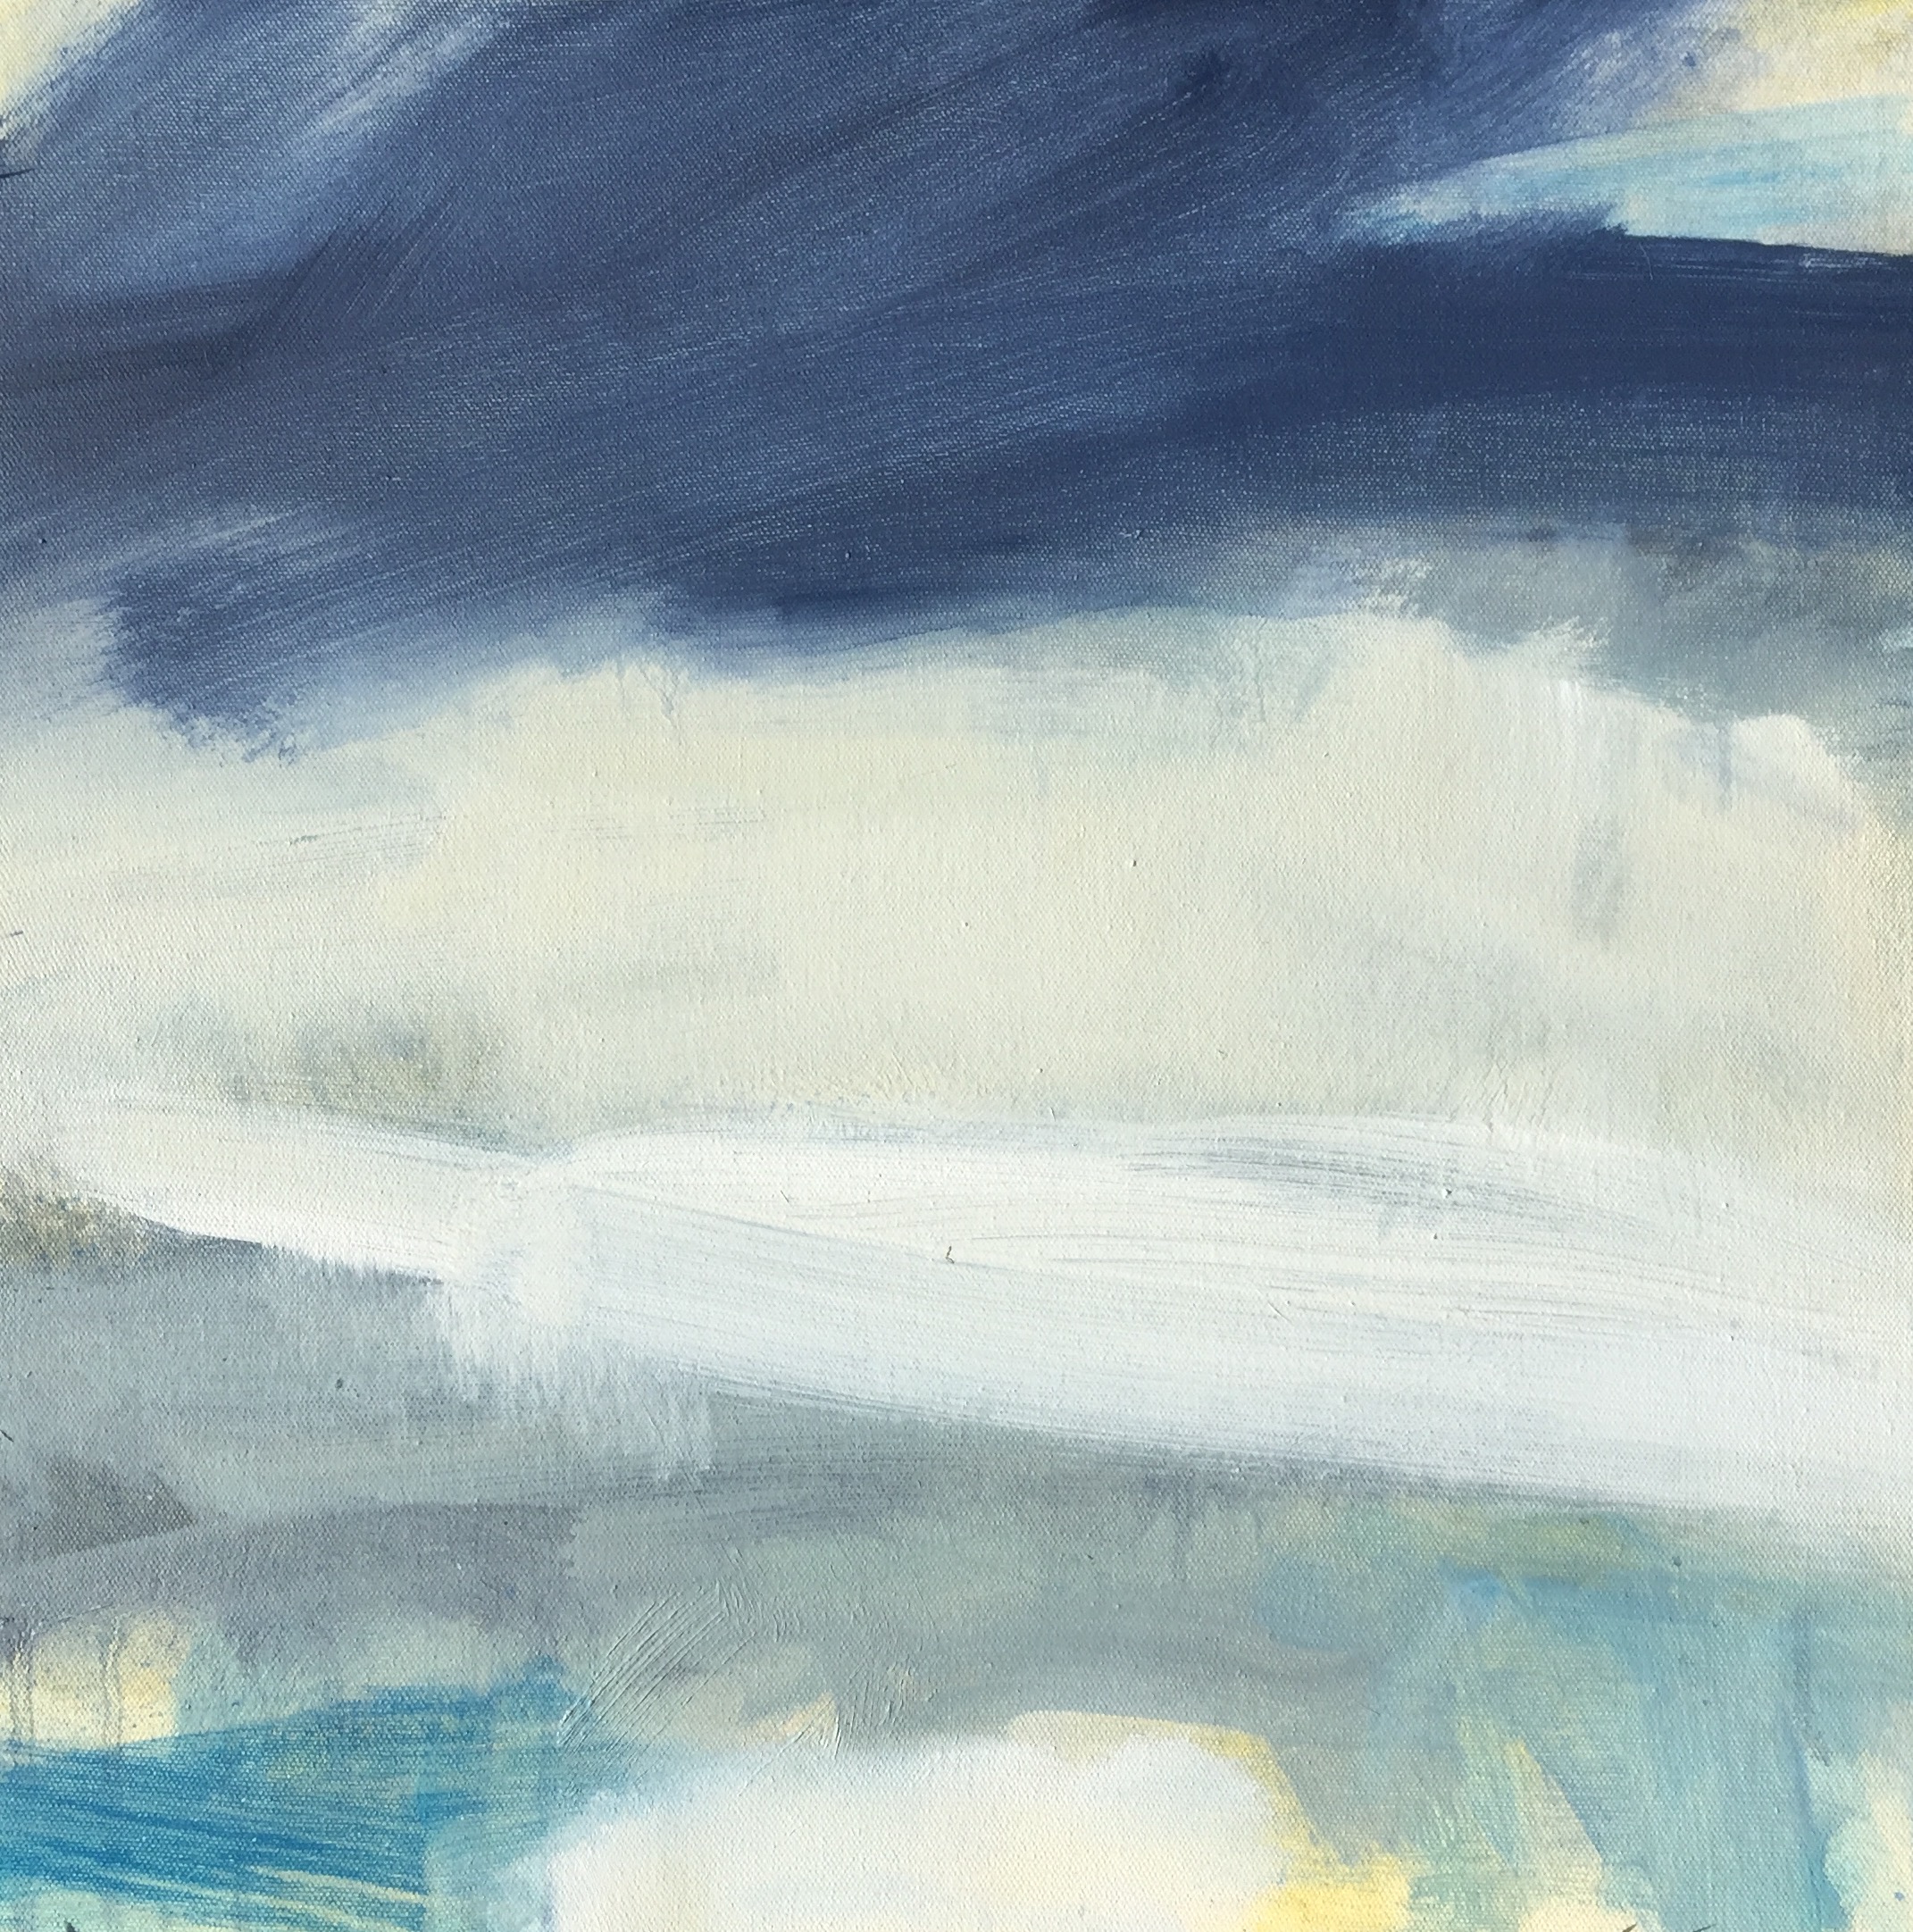 Leah-Beggs-2015-Oil-on-Canvas-44-x-44-cm-THUNDEROUS-SKIES.jpg